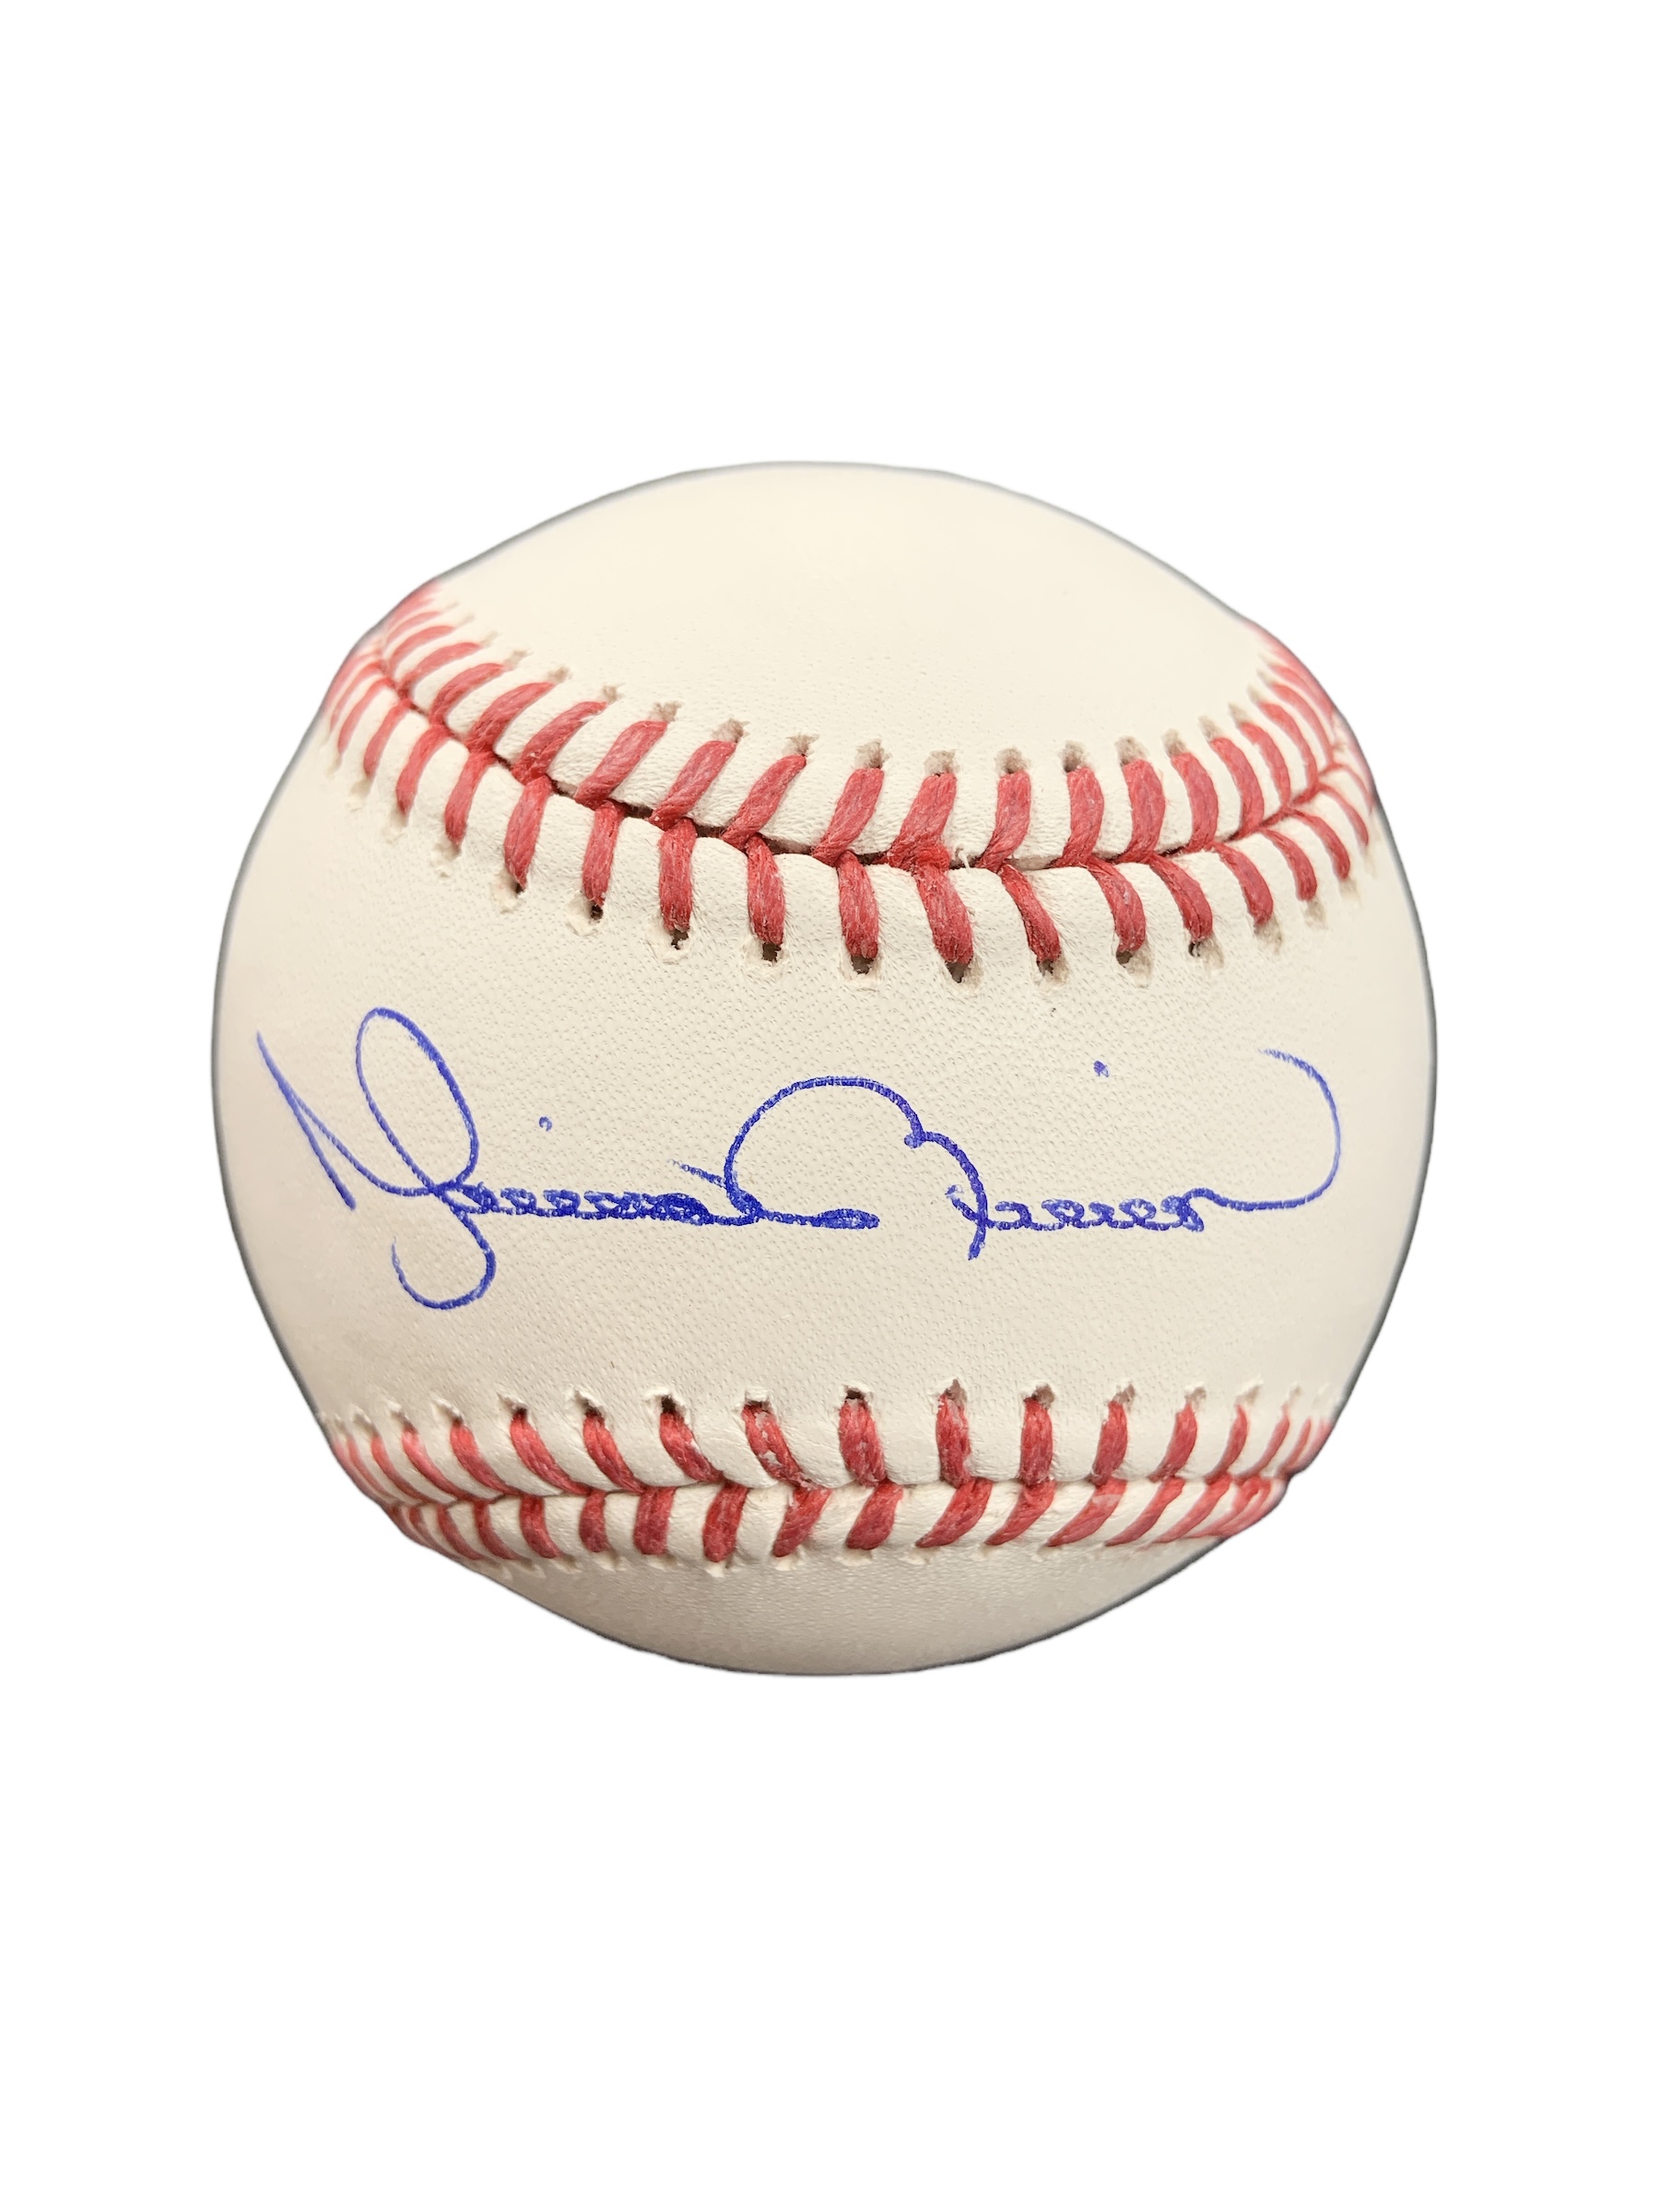 Sold at Auction: New York Yankees Mariano Rivera signed baseball